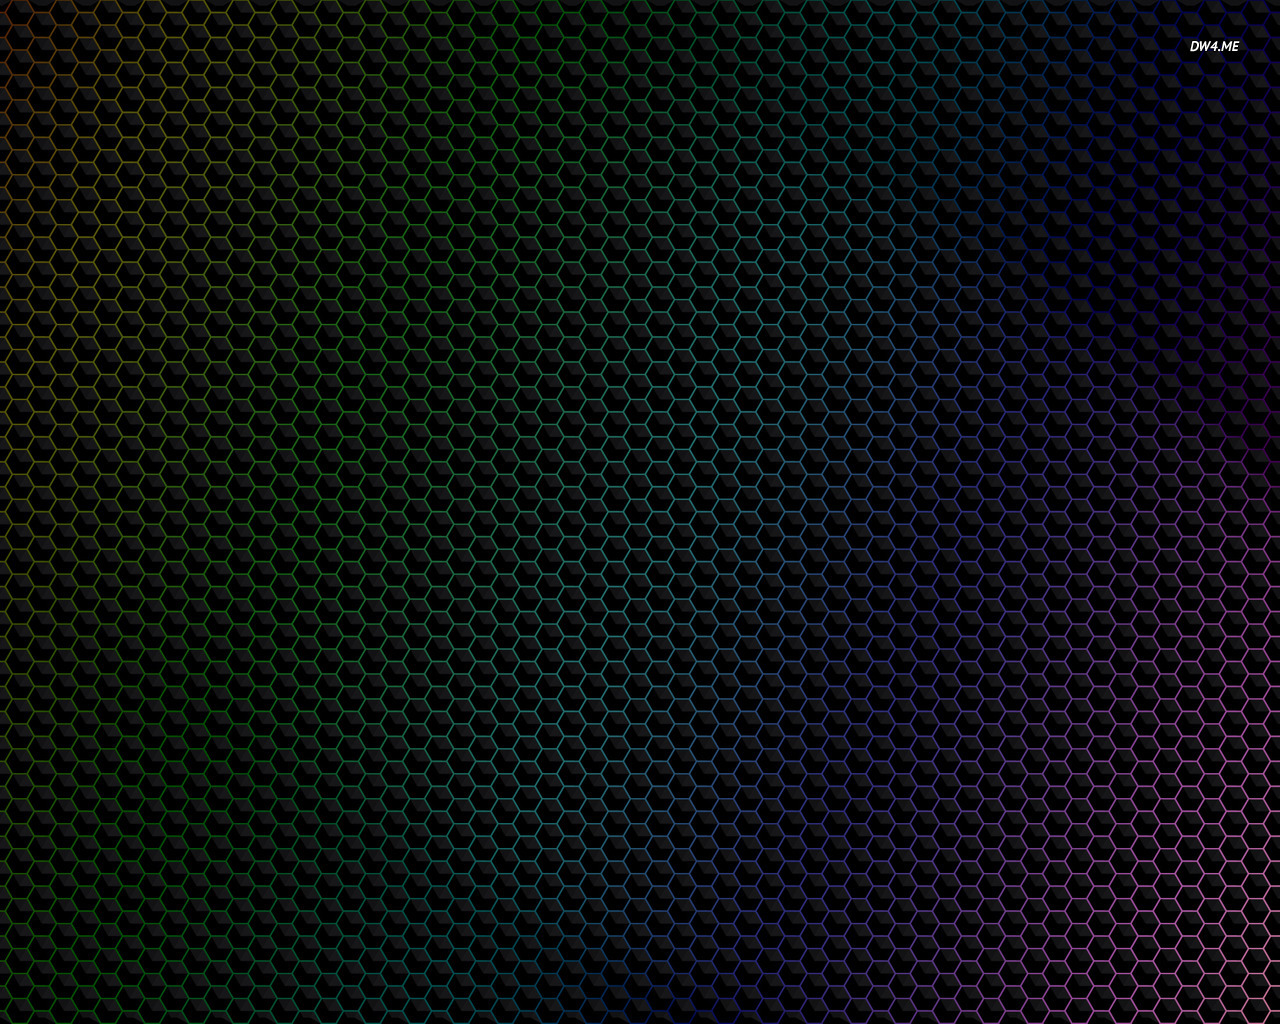 Hexagon Pattern Wallpaper Abstract